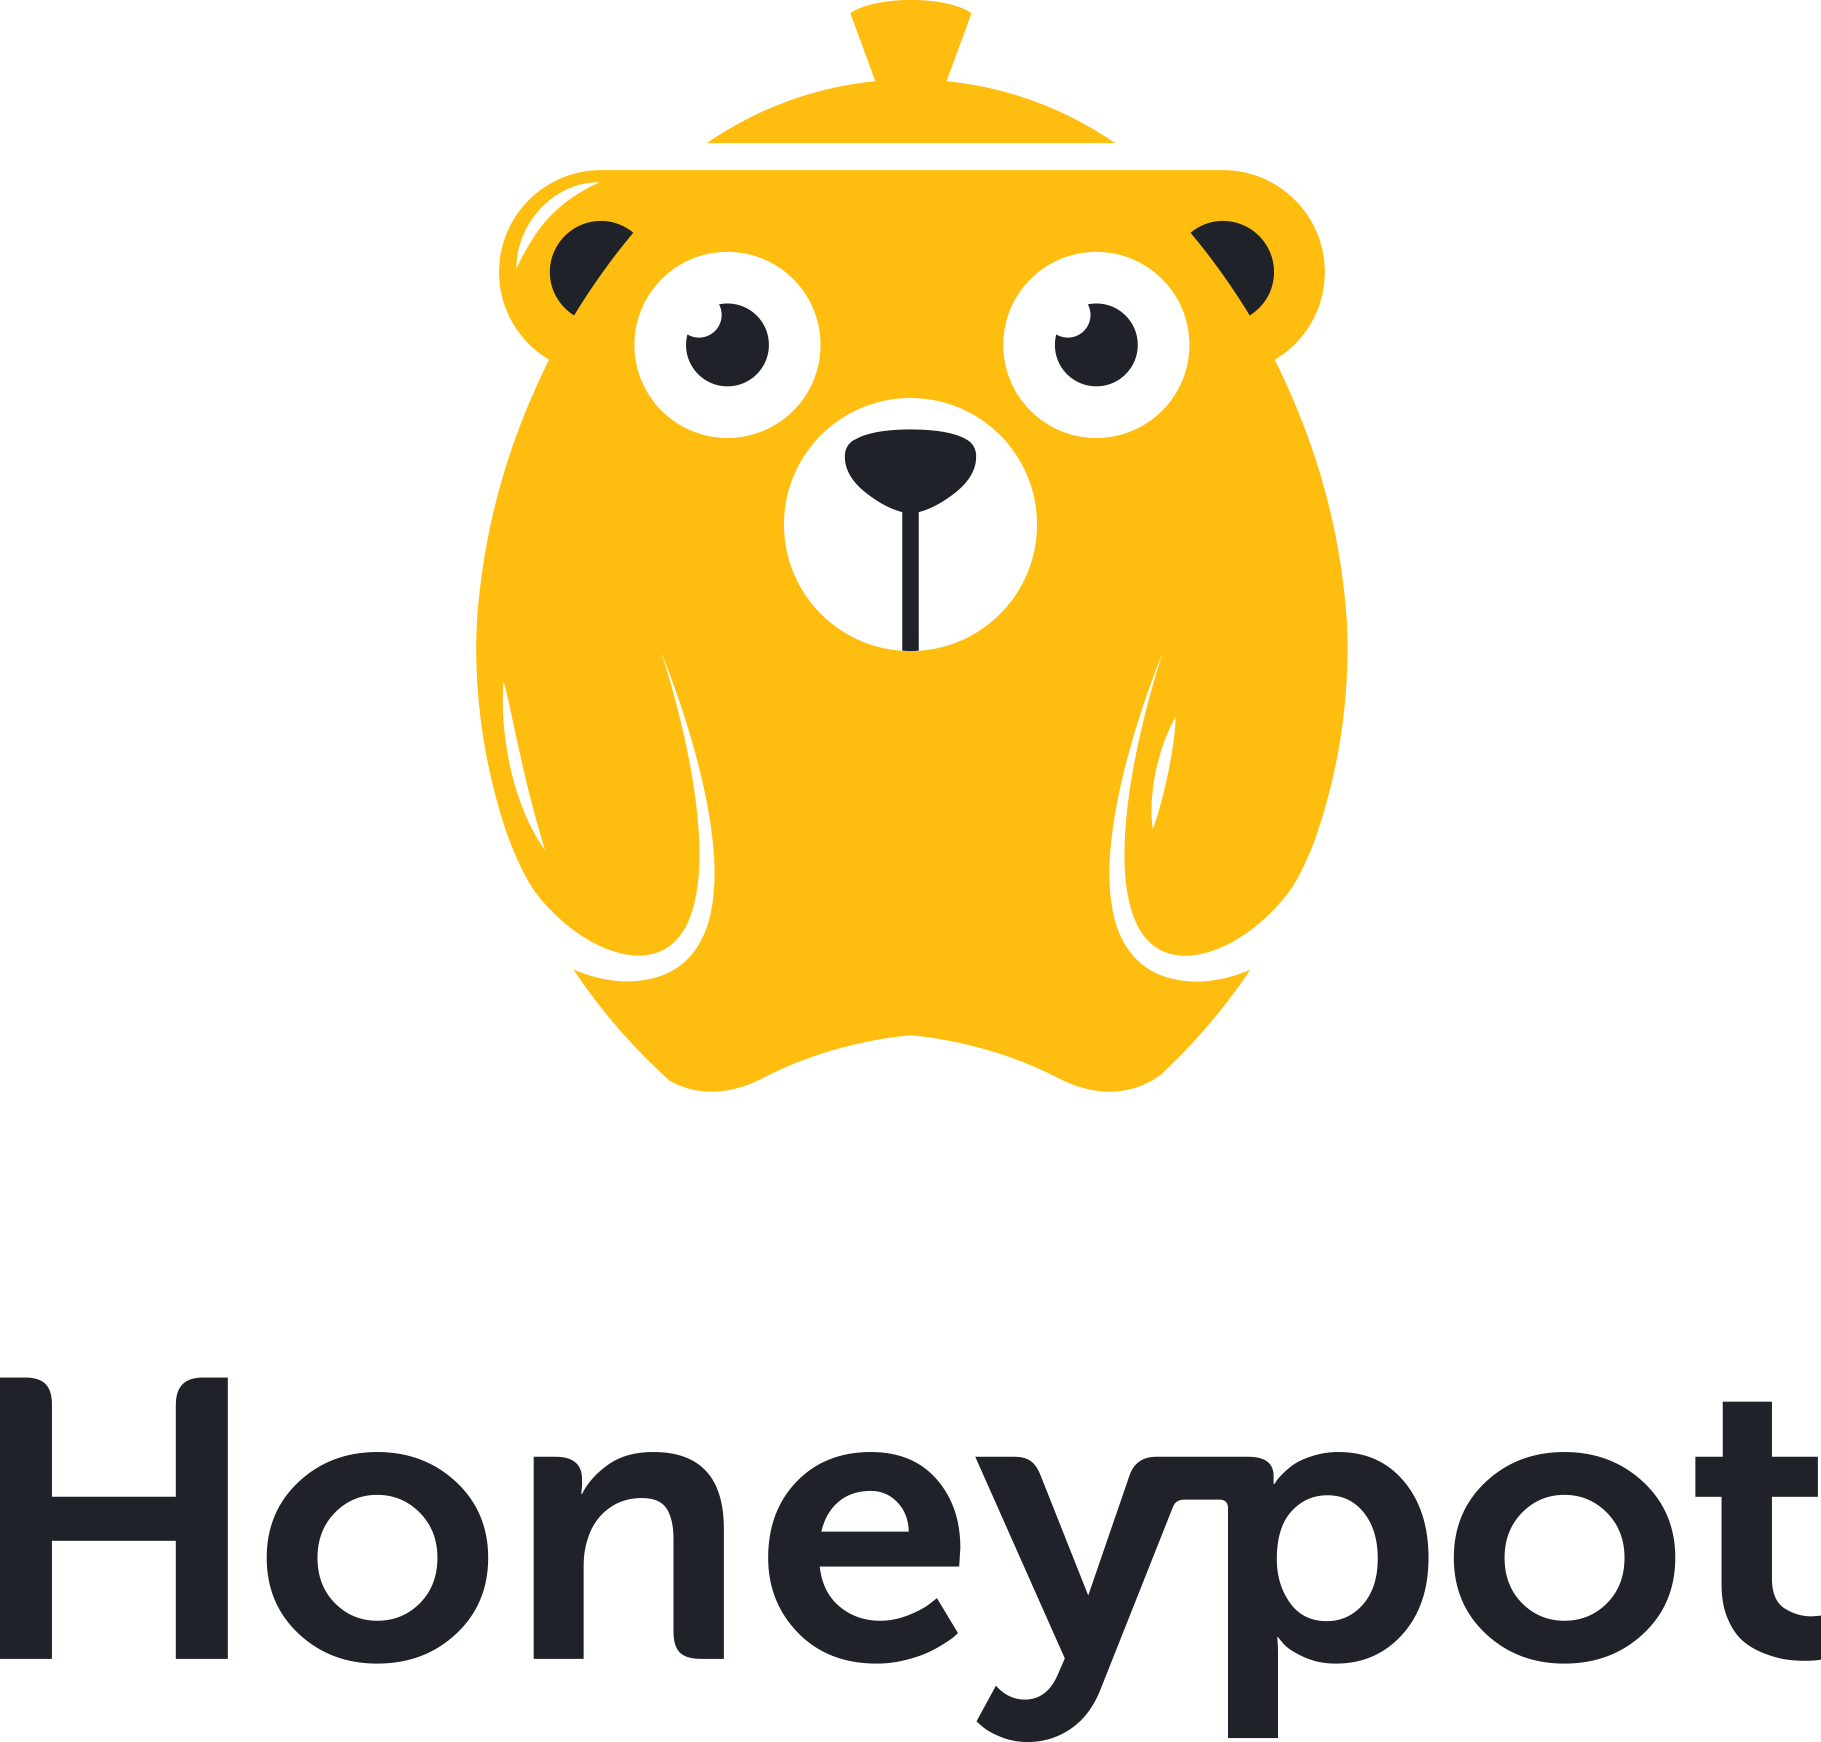 Corporate website of Honeypot